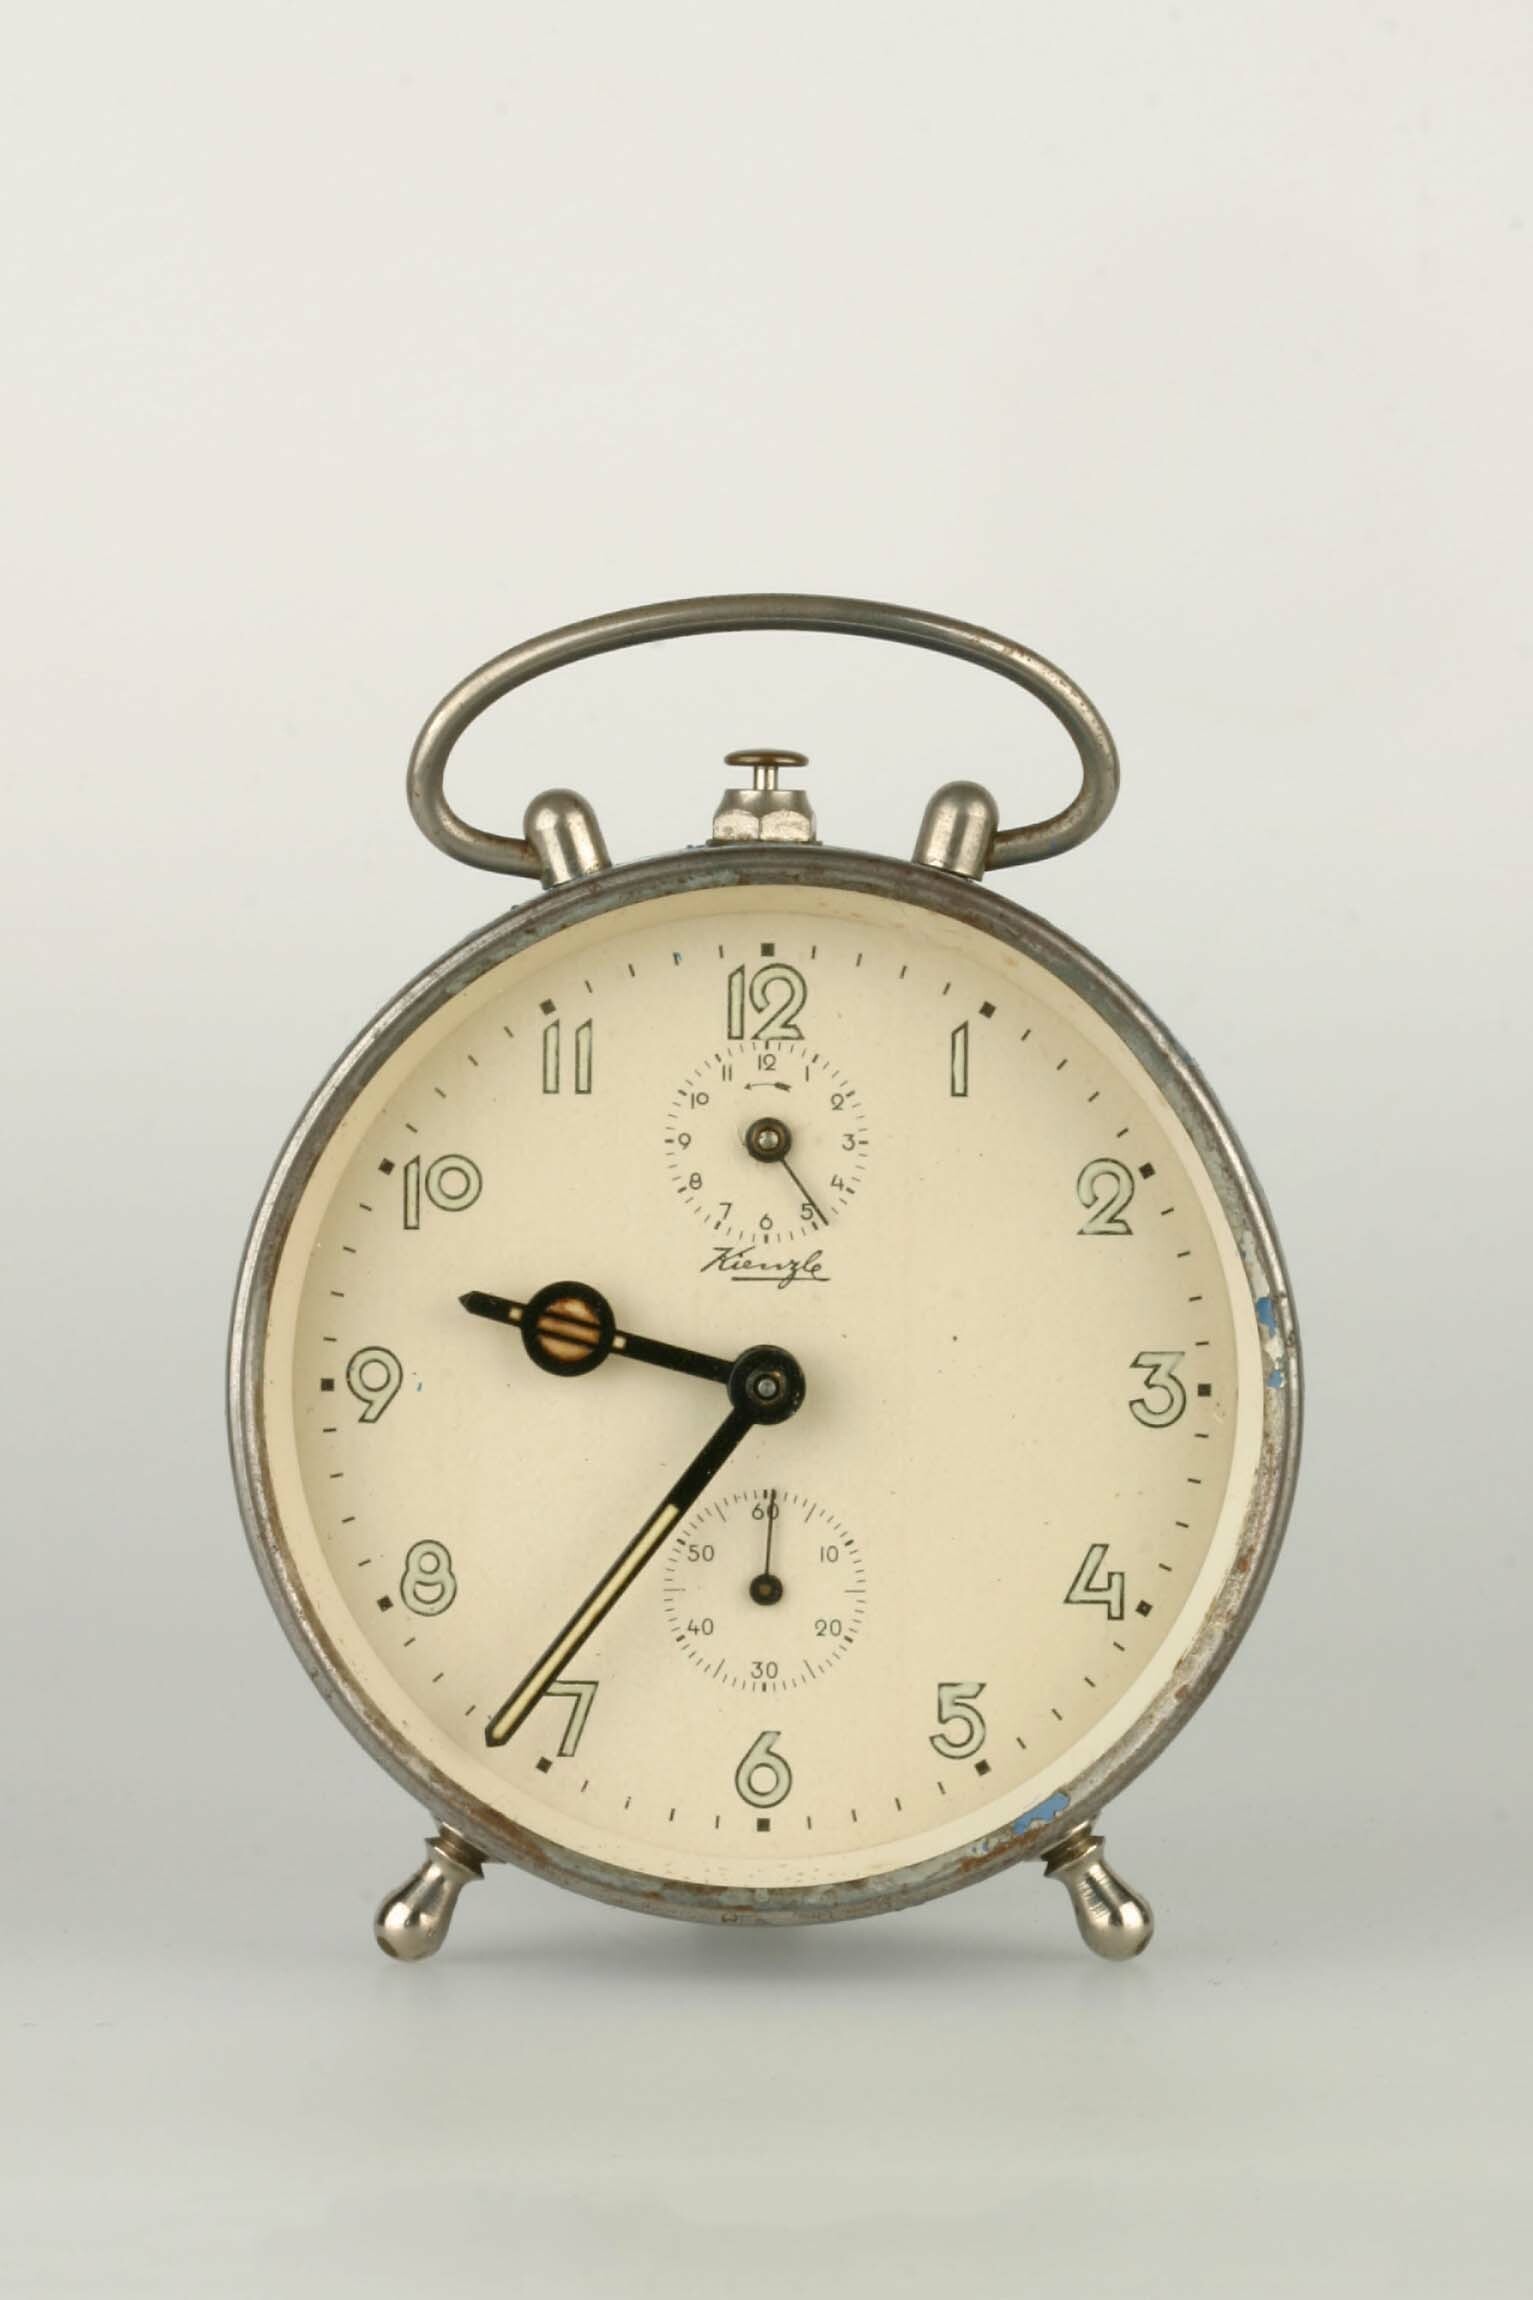 Rückwandglockenwecker, Kienzle, Schwenningen, um 1935 (Deutsches Uhrenmuseum CC BY-SA)